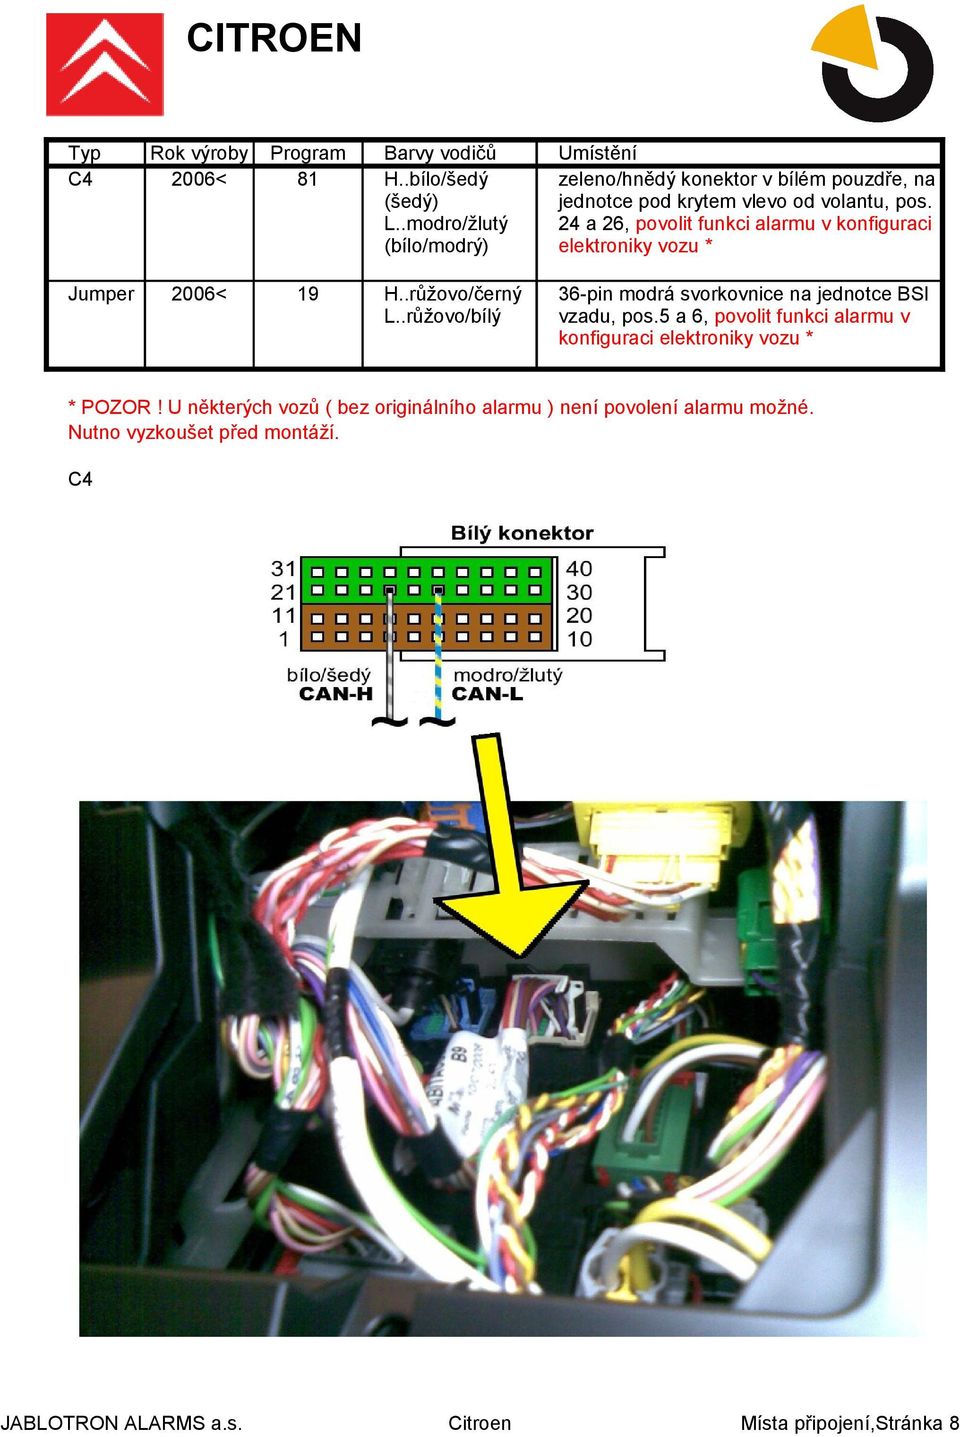 24 a 26, povolit funkci alarmu v konfiguraci elektroniky vozu * H..růžovo/černý L.